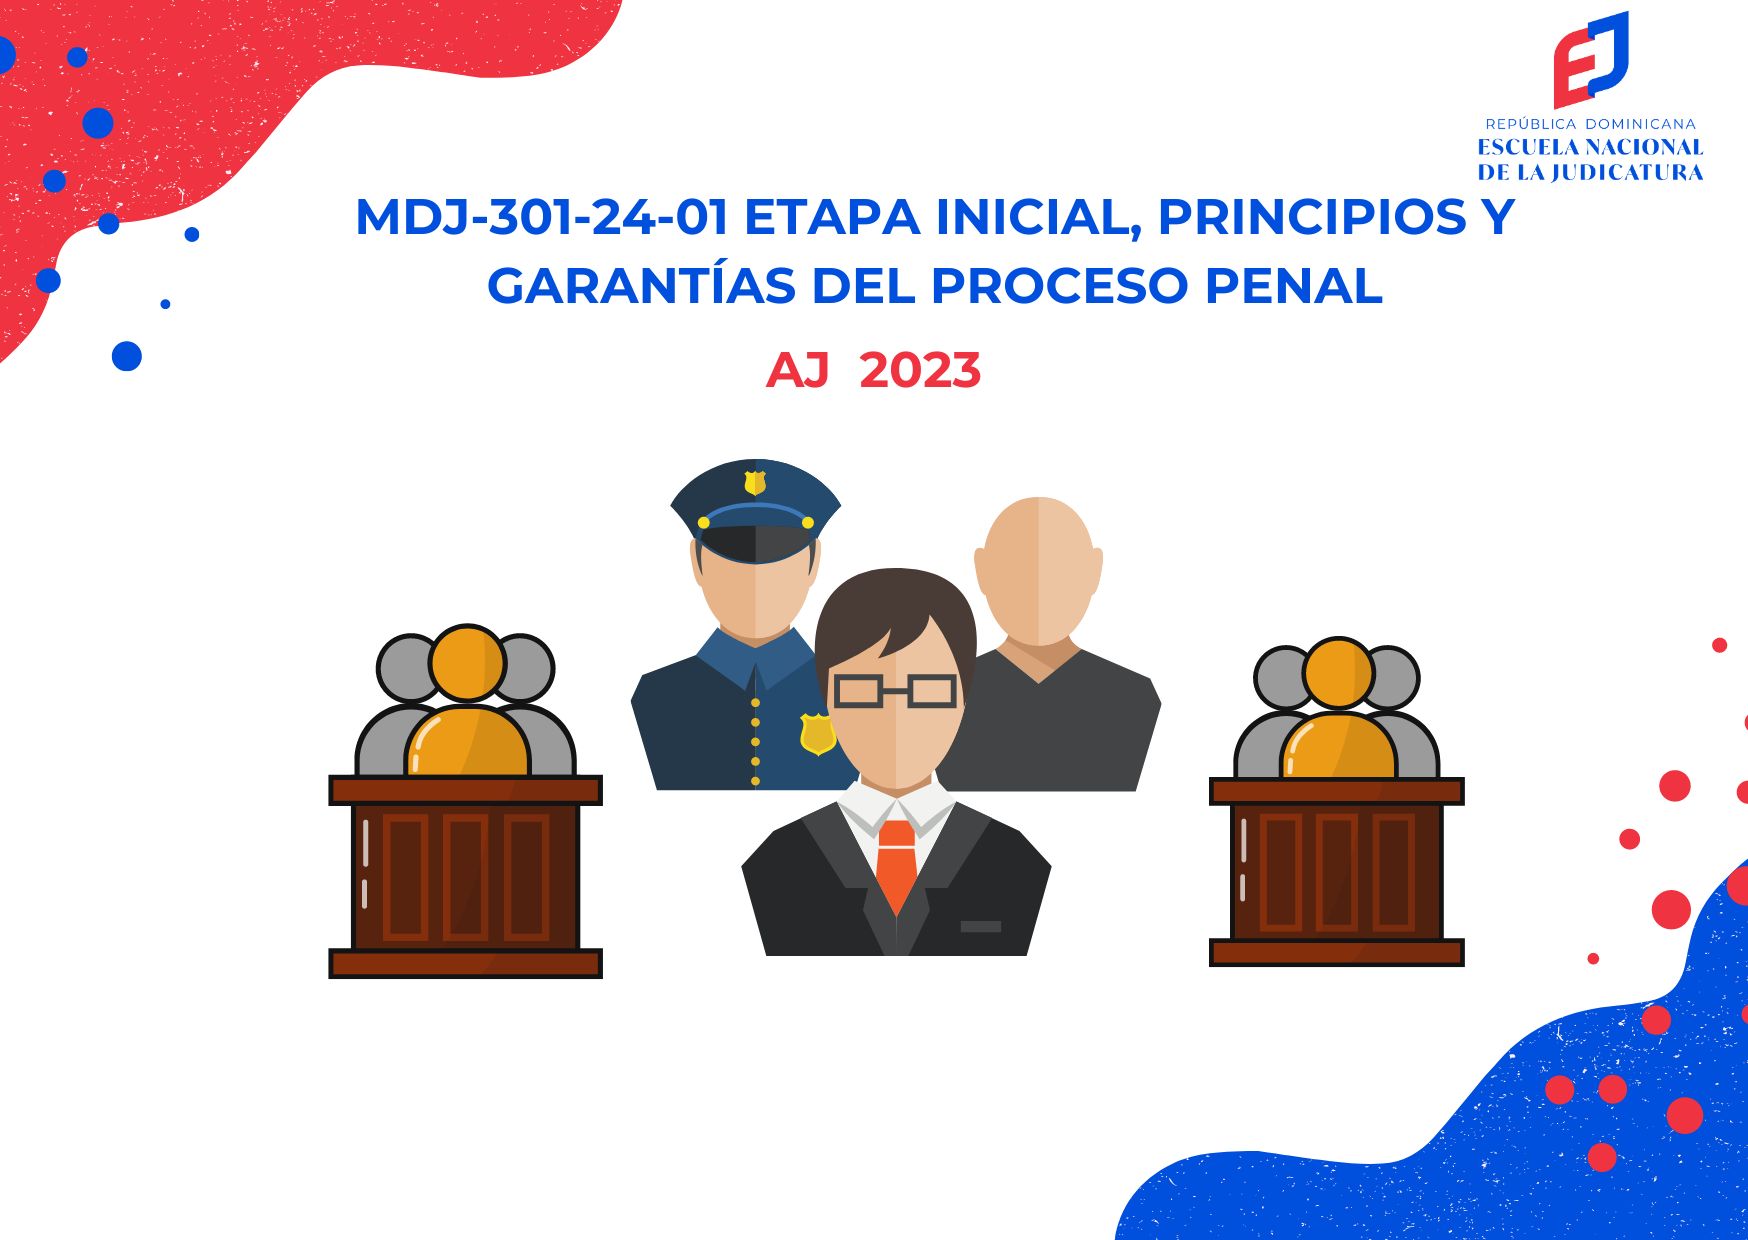 MDJ-301-24-01 Etapa Inicial, Principios y Garantías del Proceso Penal (AJ 2023)